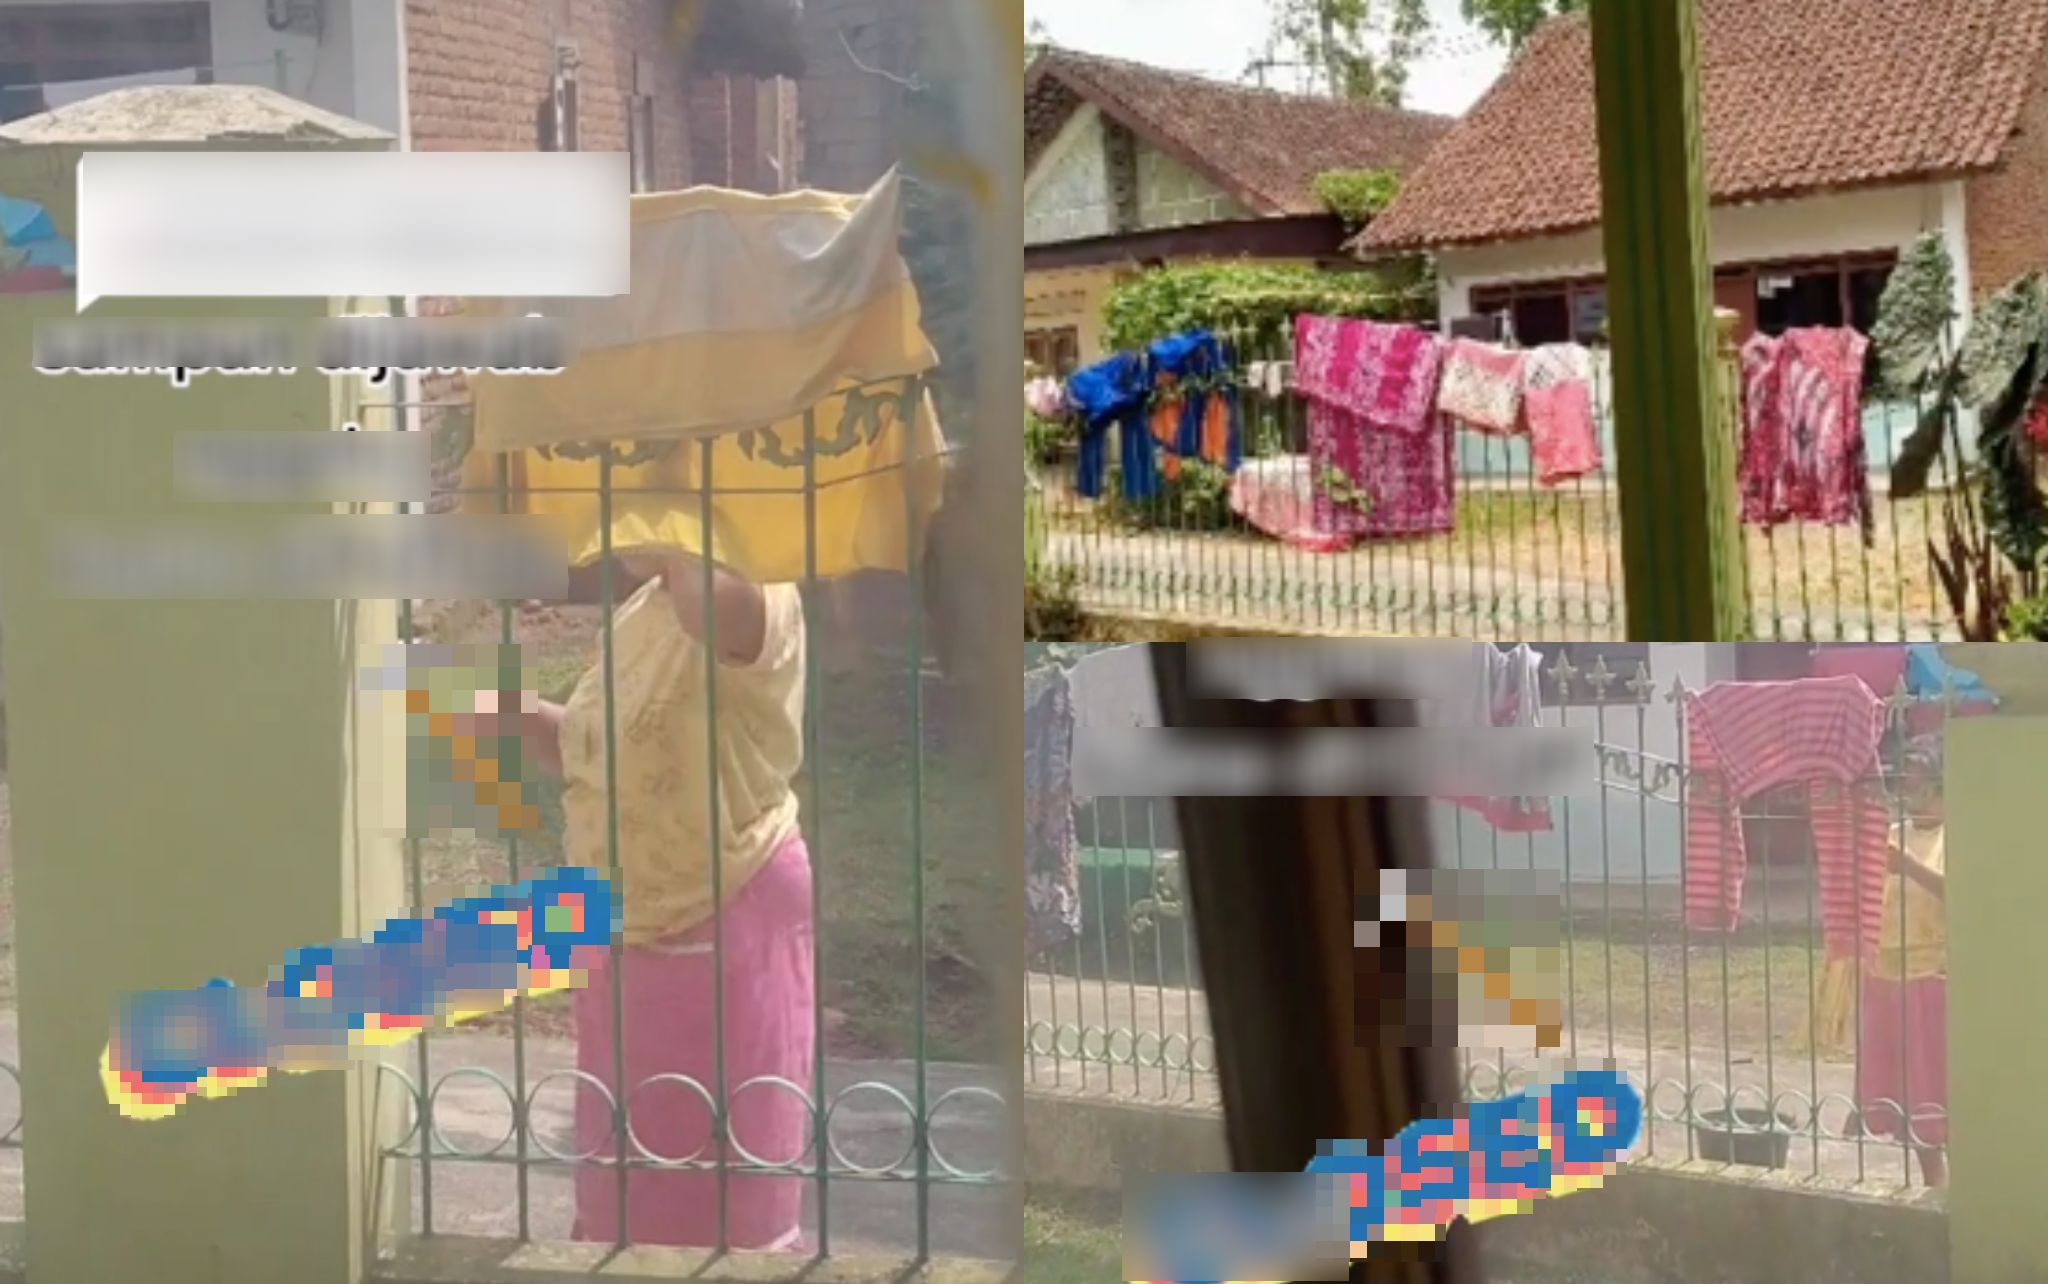 [VIDEO] Wanita Geram Jiran Suka Sidai Baju Dekat Pagar Rumah, Buat Macam Pagar Sendiri!